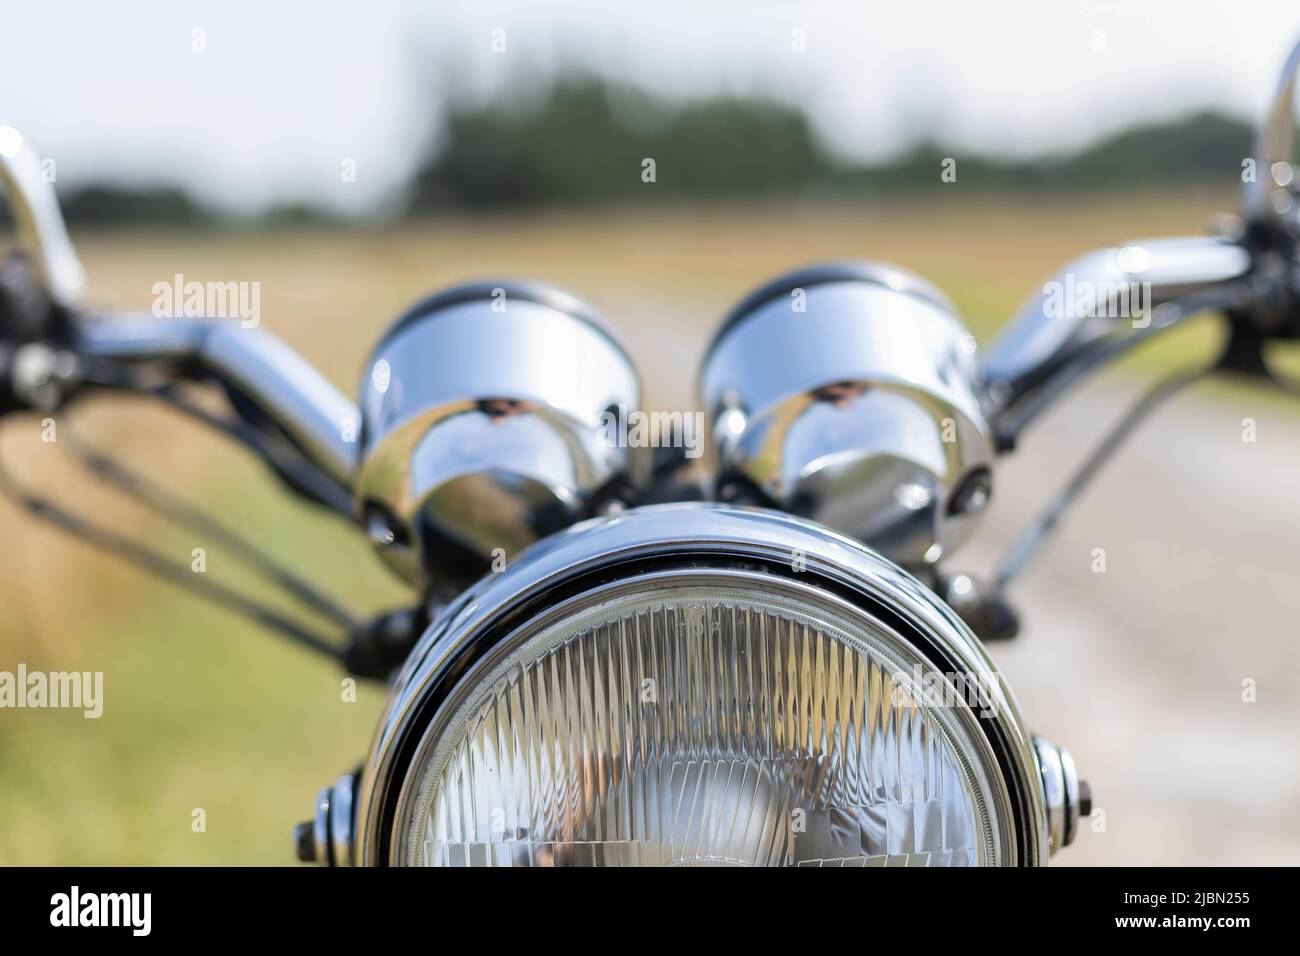 vue rapprochée de l'avant d'une moto en plein soleil Banque D'Images